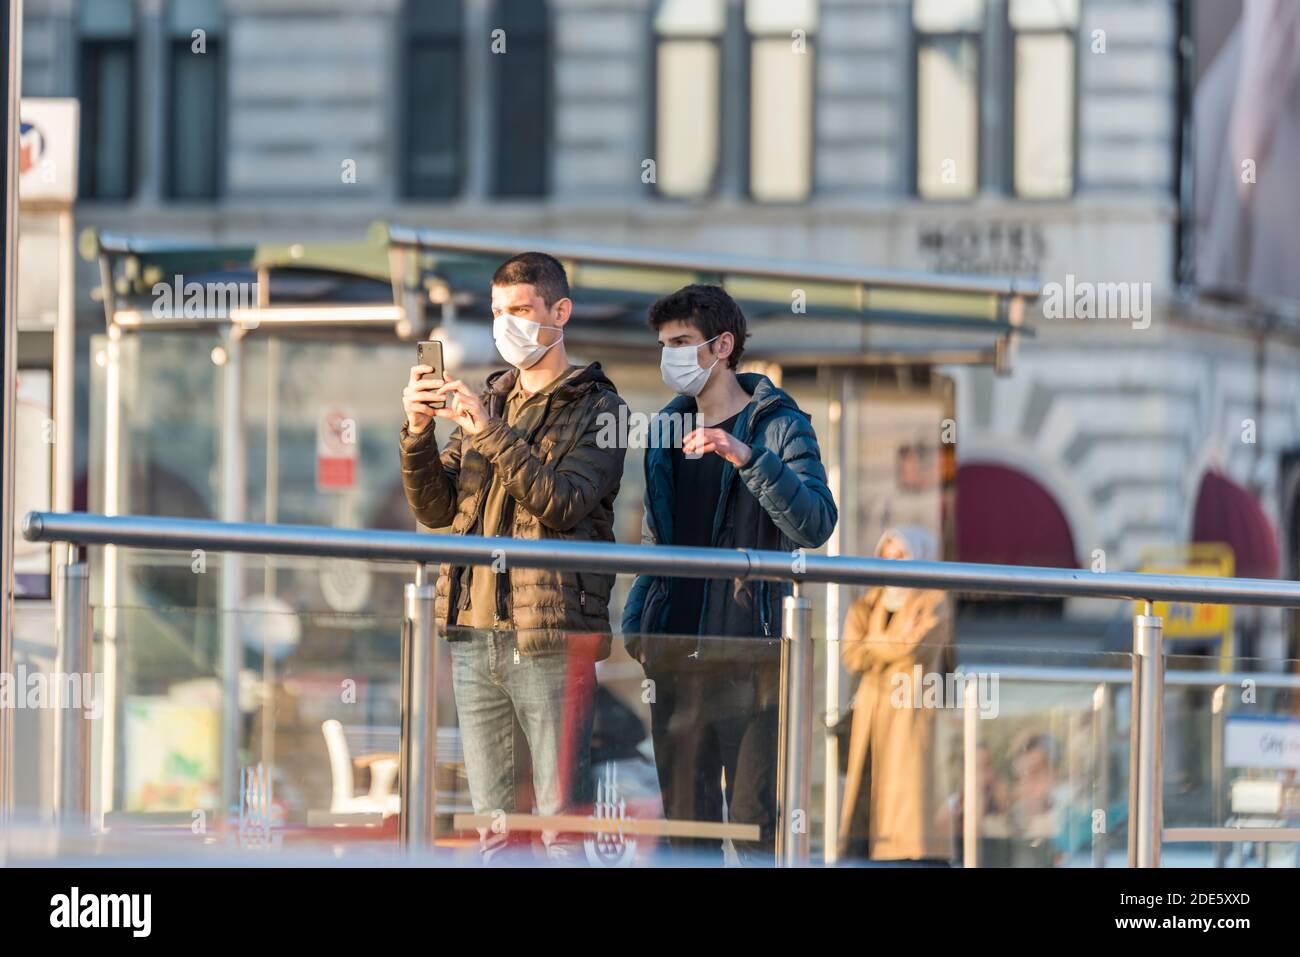 Persone turche non identificate che indossano maschere facciali di protezione in linea si muovono Per entrare o uscire in metropolitana durante il Coronavirus COVID-19 Epidemic.Istanbul, Turchia Foto Stock